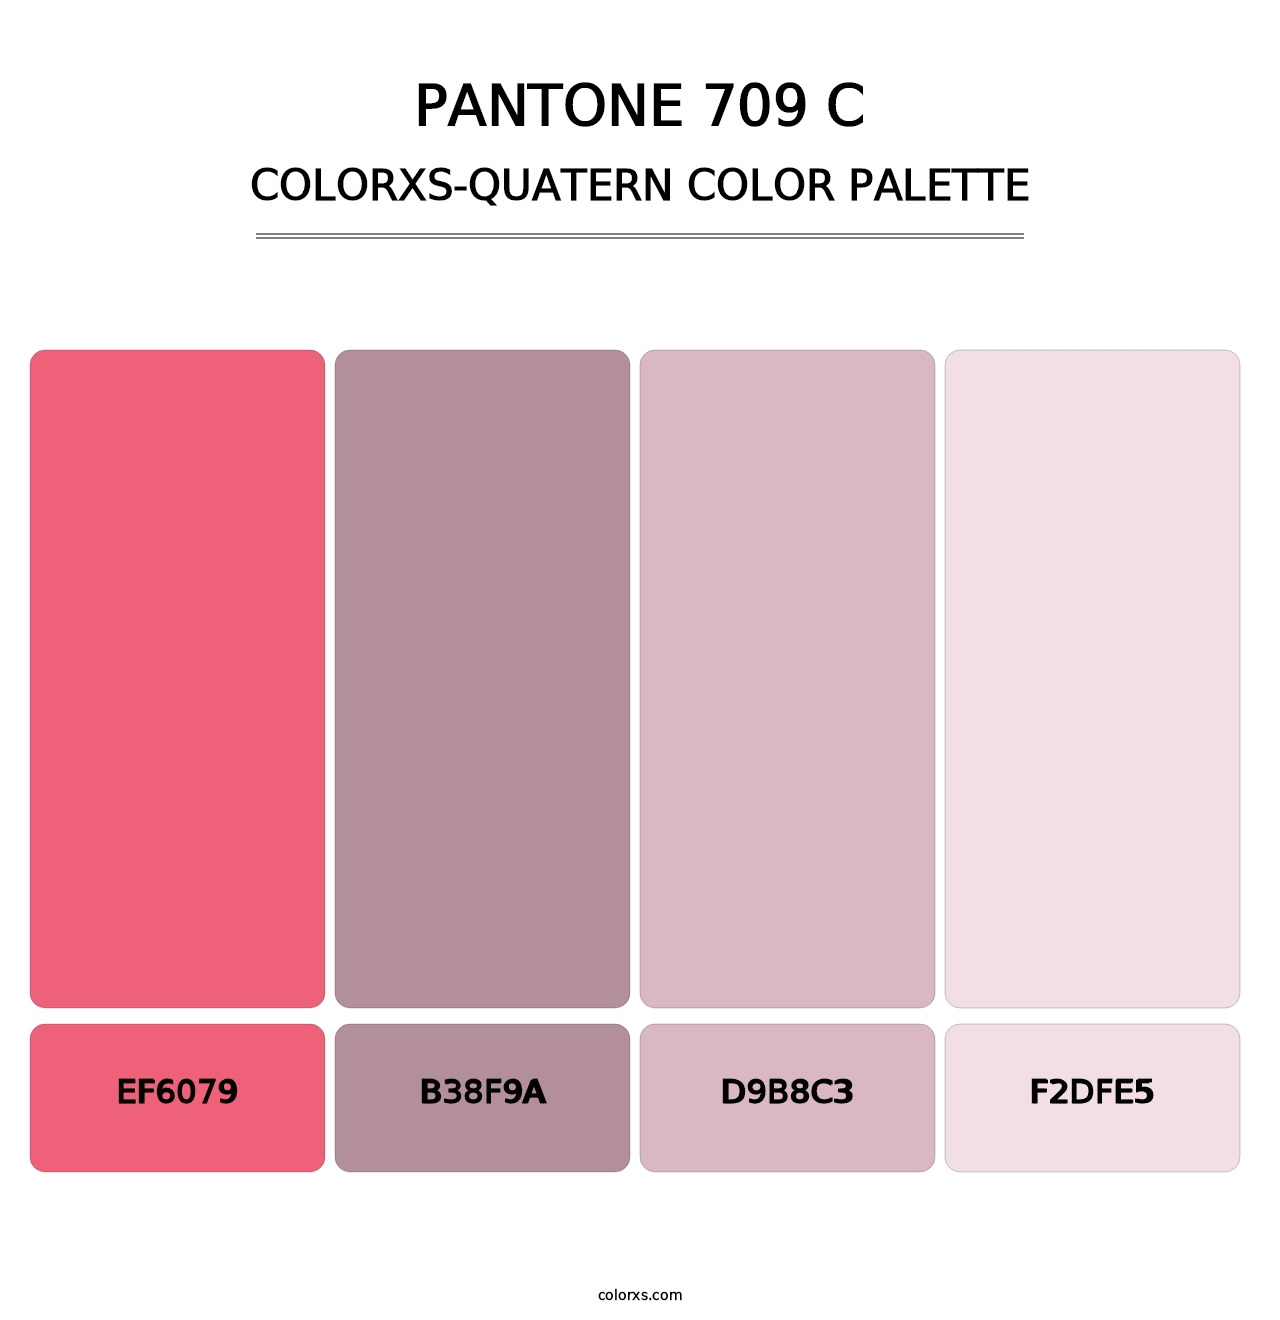 PANTONE 709 C - Colorxs Quatern Palette